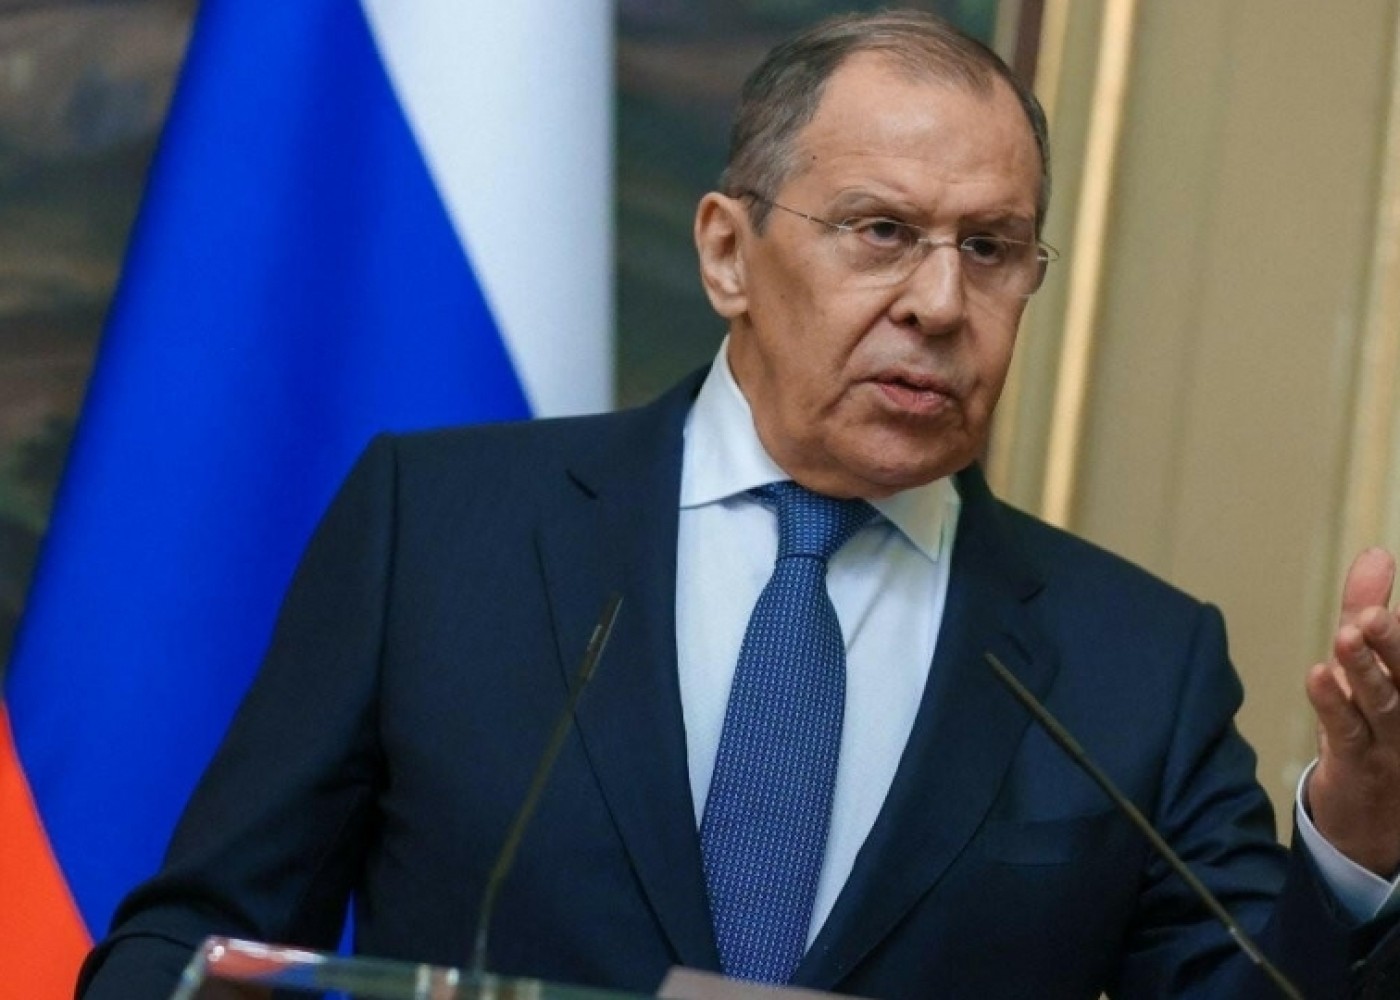 Rusiyalı jurnalistlərə viza verilməməsini bağışlamayacağıq - Lavrov